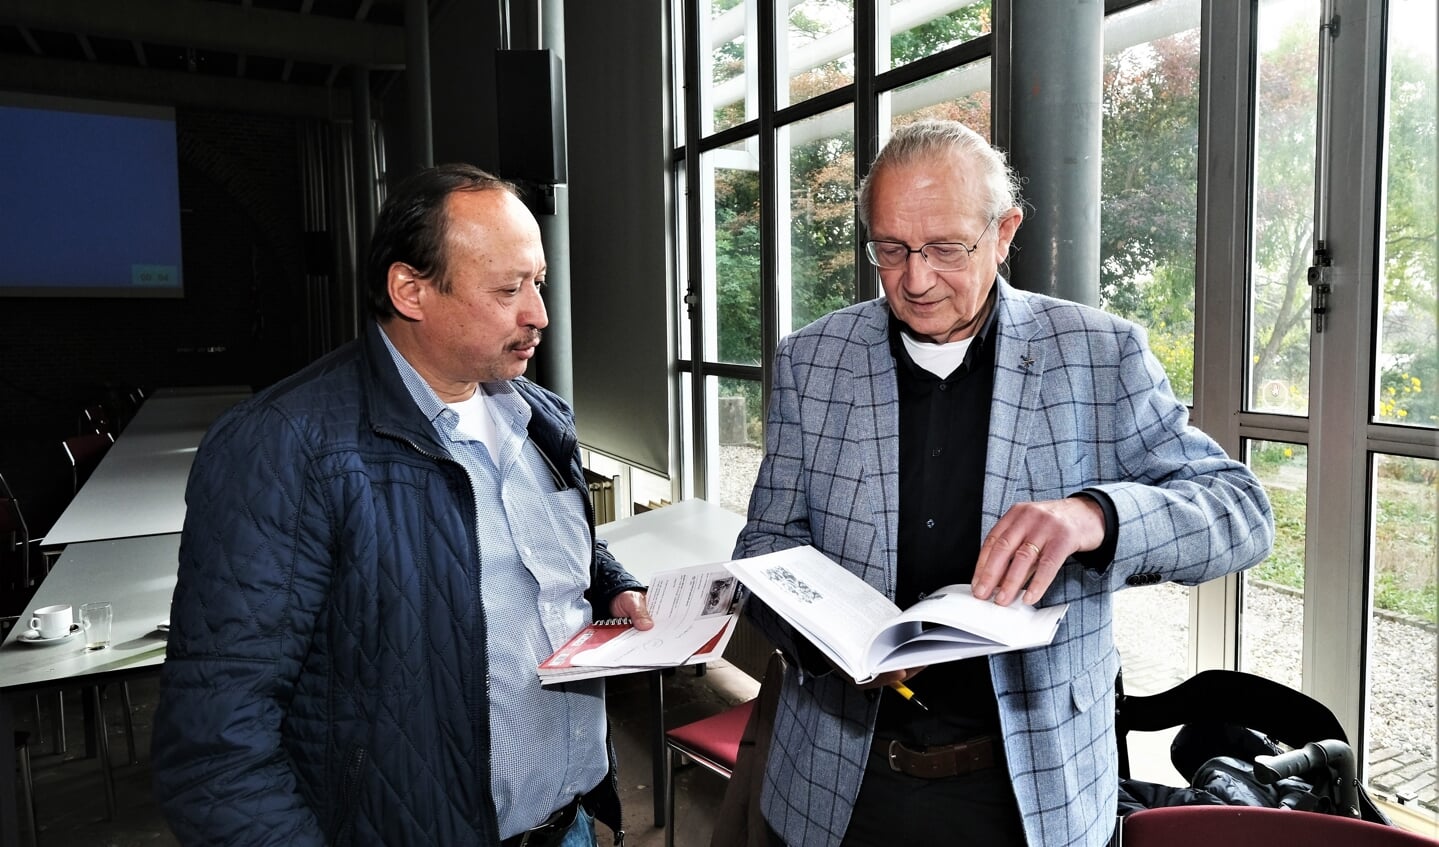 De schrijver bekijkt samen met Rijnpostredacteur Martin Brink de nieuwe publicatie. 